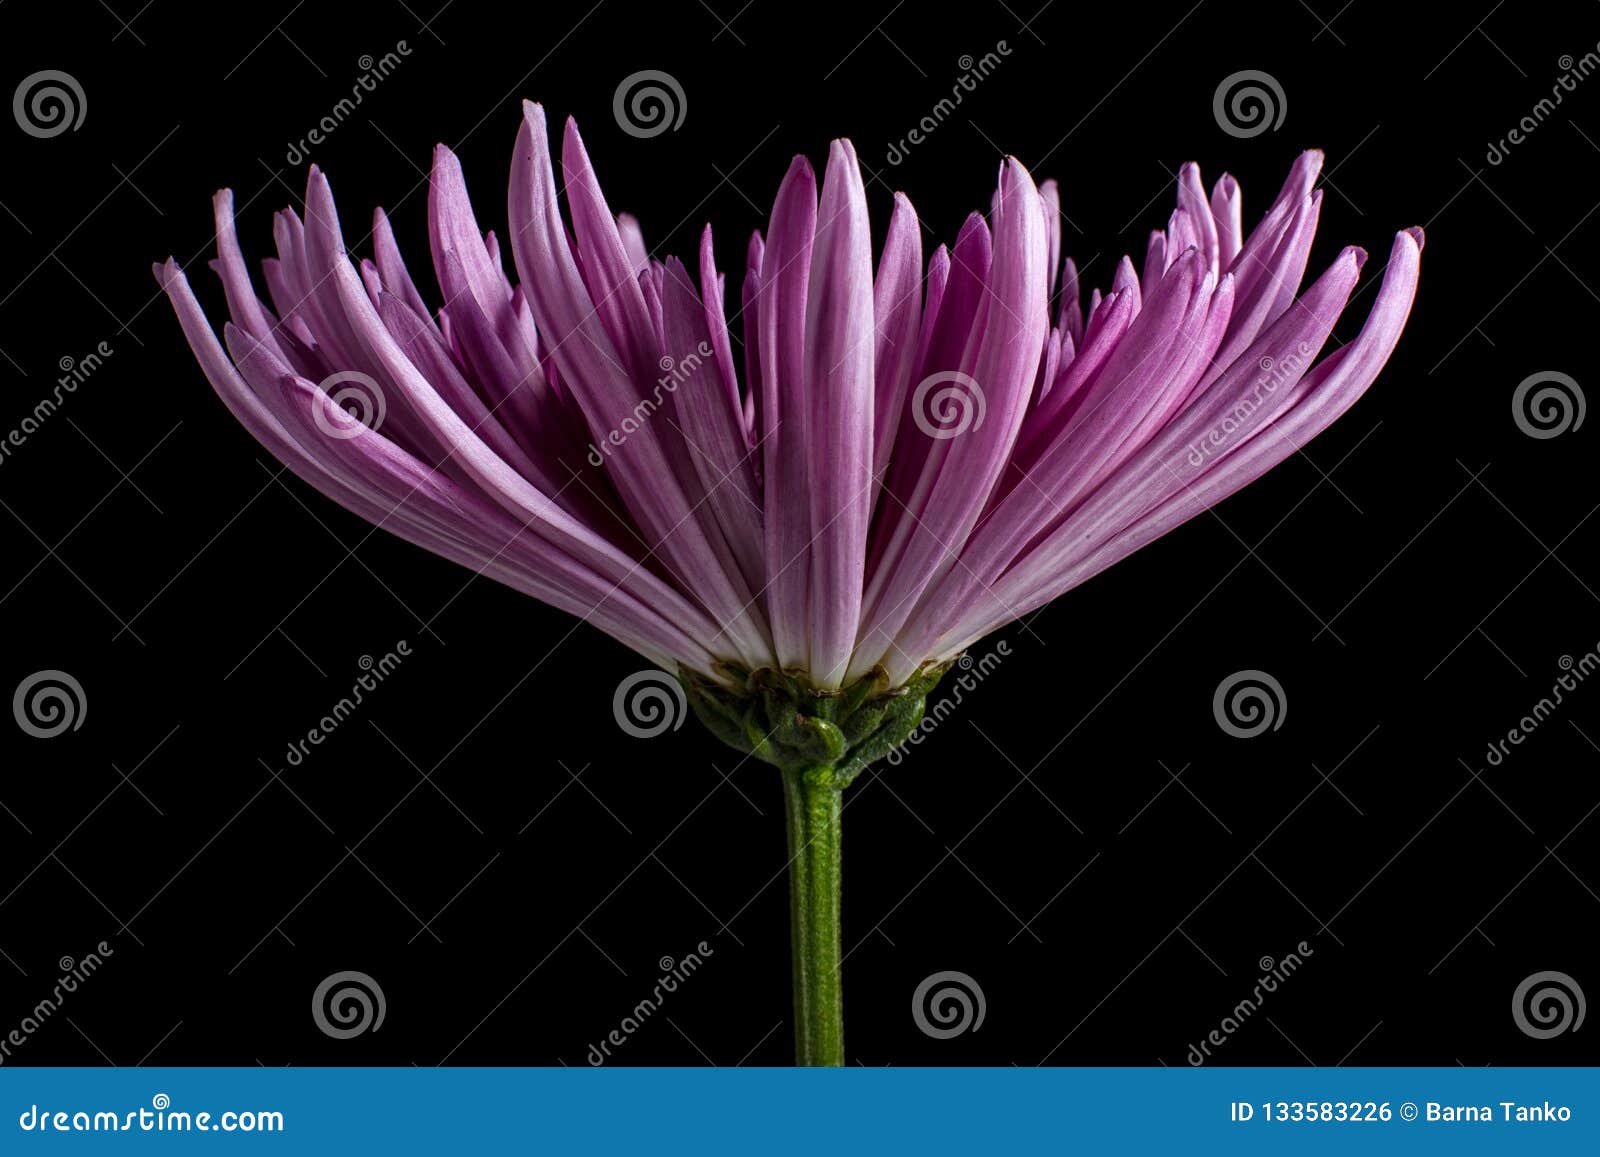 purple aster flower macro